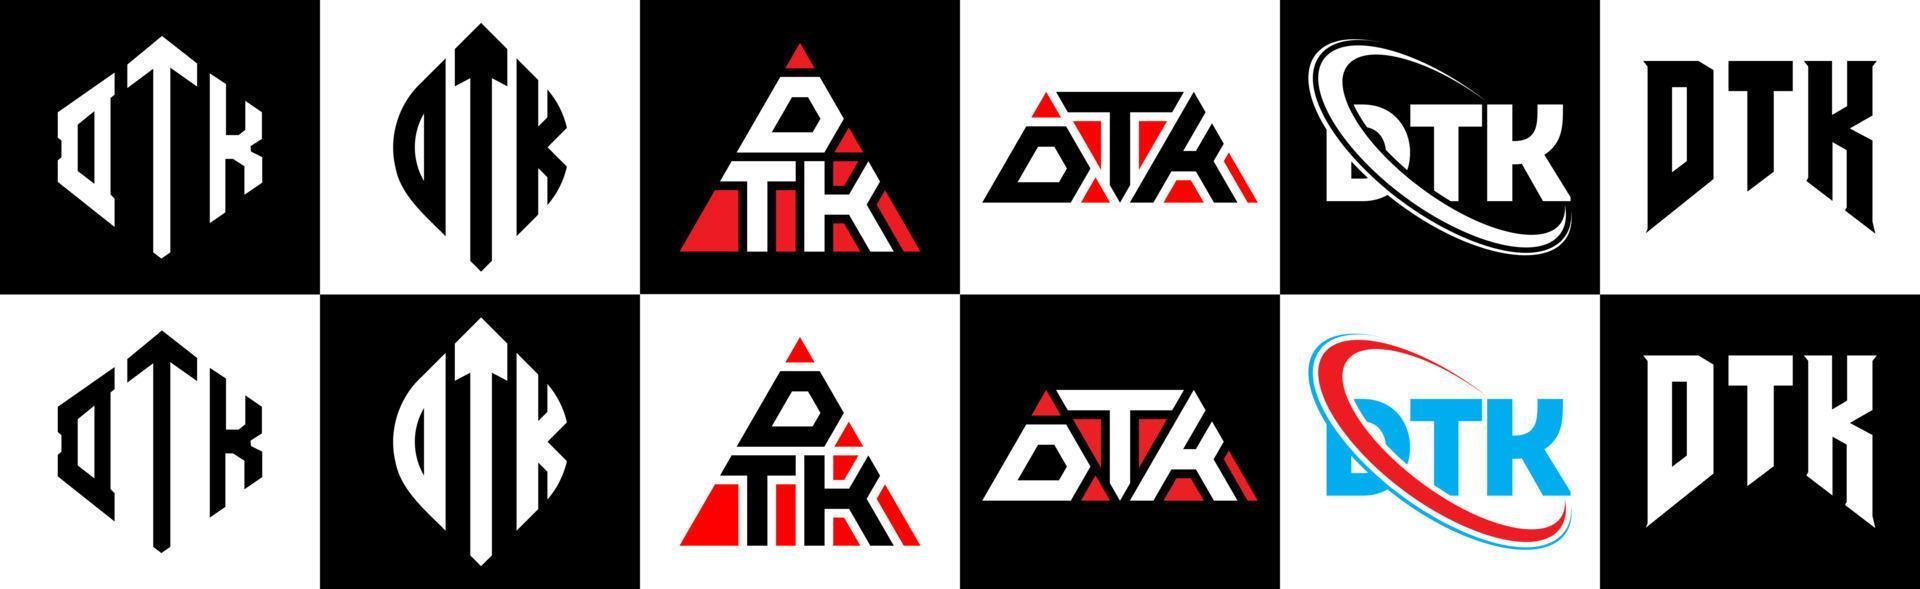 design de logotipo de letra dtk em seis estilo. polígono dtk, círculo, triângulo, hexágono, estilo plano e simples com logotipo de carta de variação de cor preto e branco definido em uma prancheta. dtk logotipo minimalista e clássico vetor